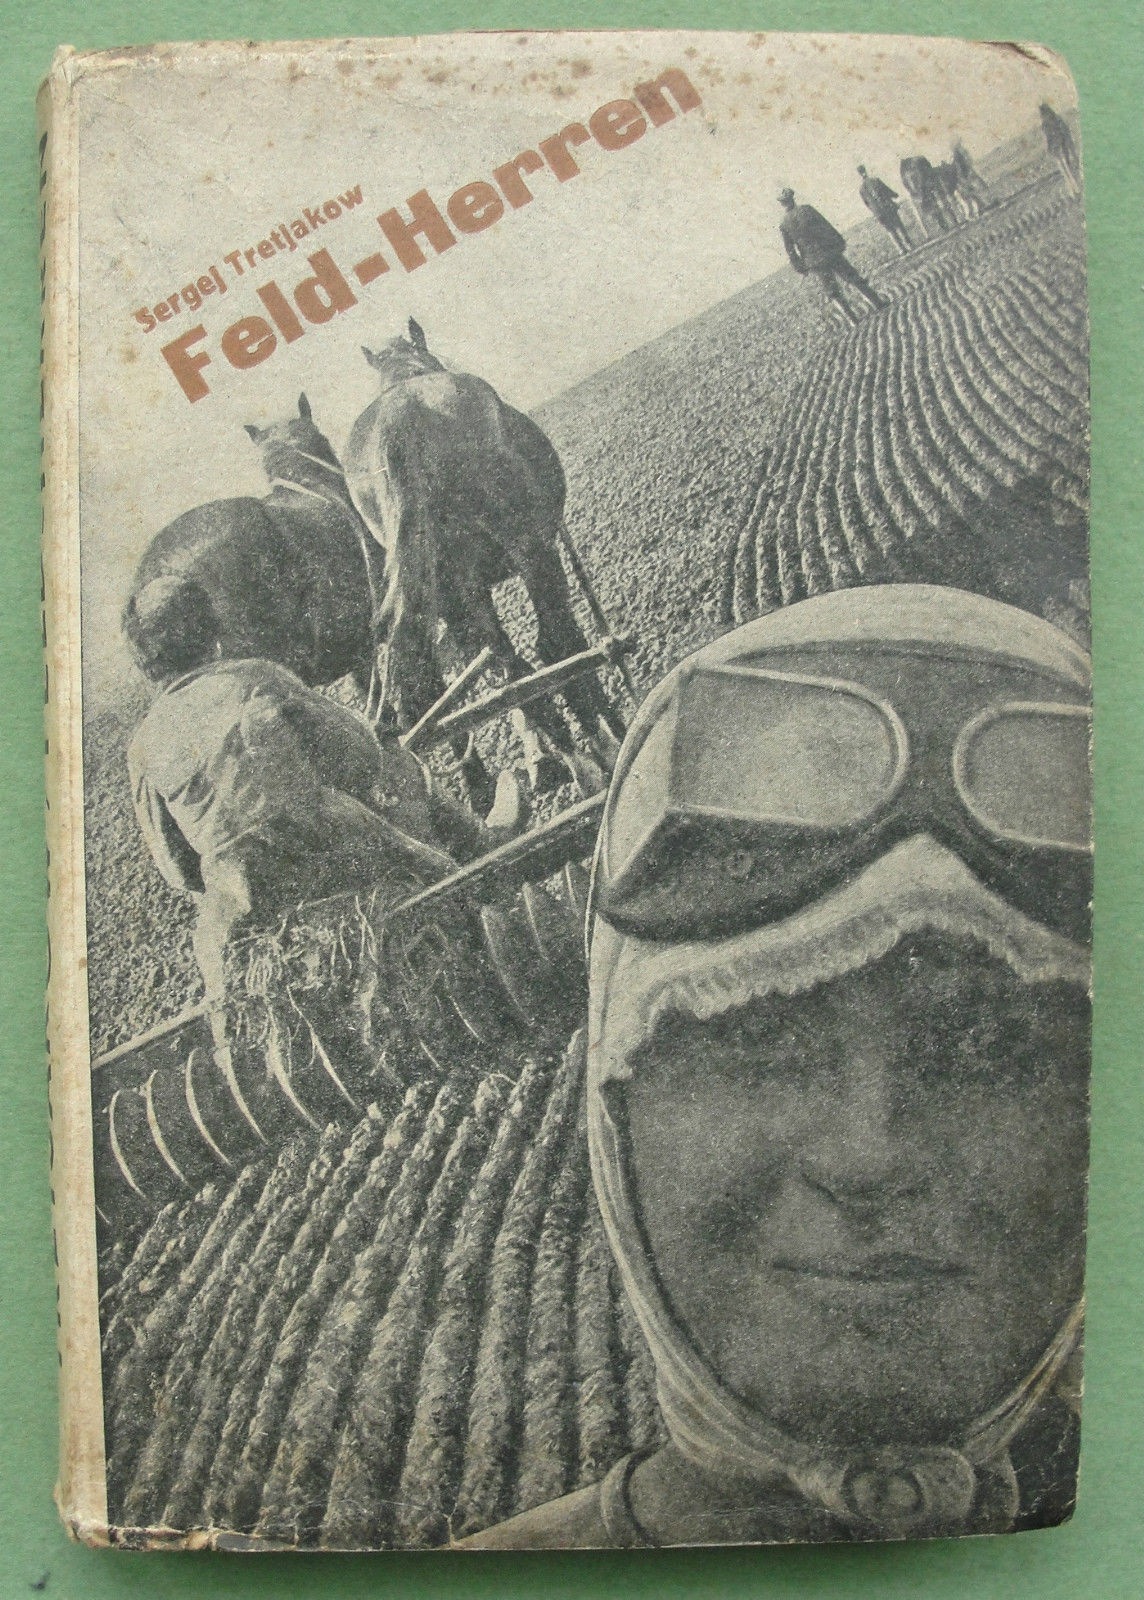 Сборник Feld-Herren (1932, Хозяин полей), в&nbsp;котором были опубликованы немецкие переводы колхозных очерков Третьякова, ставшие известные Беньямину